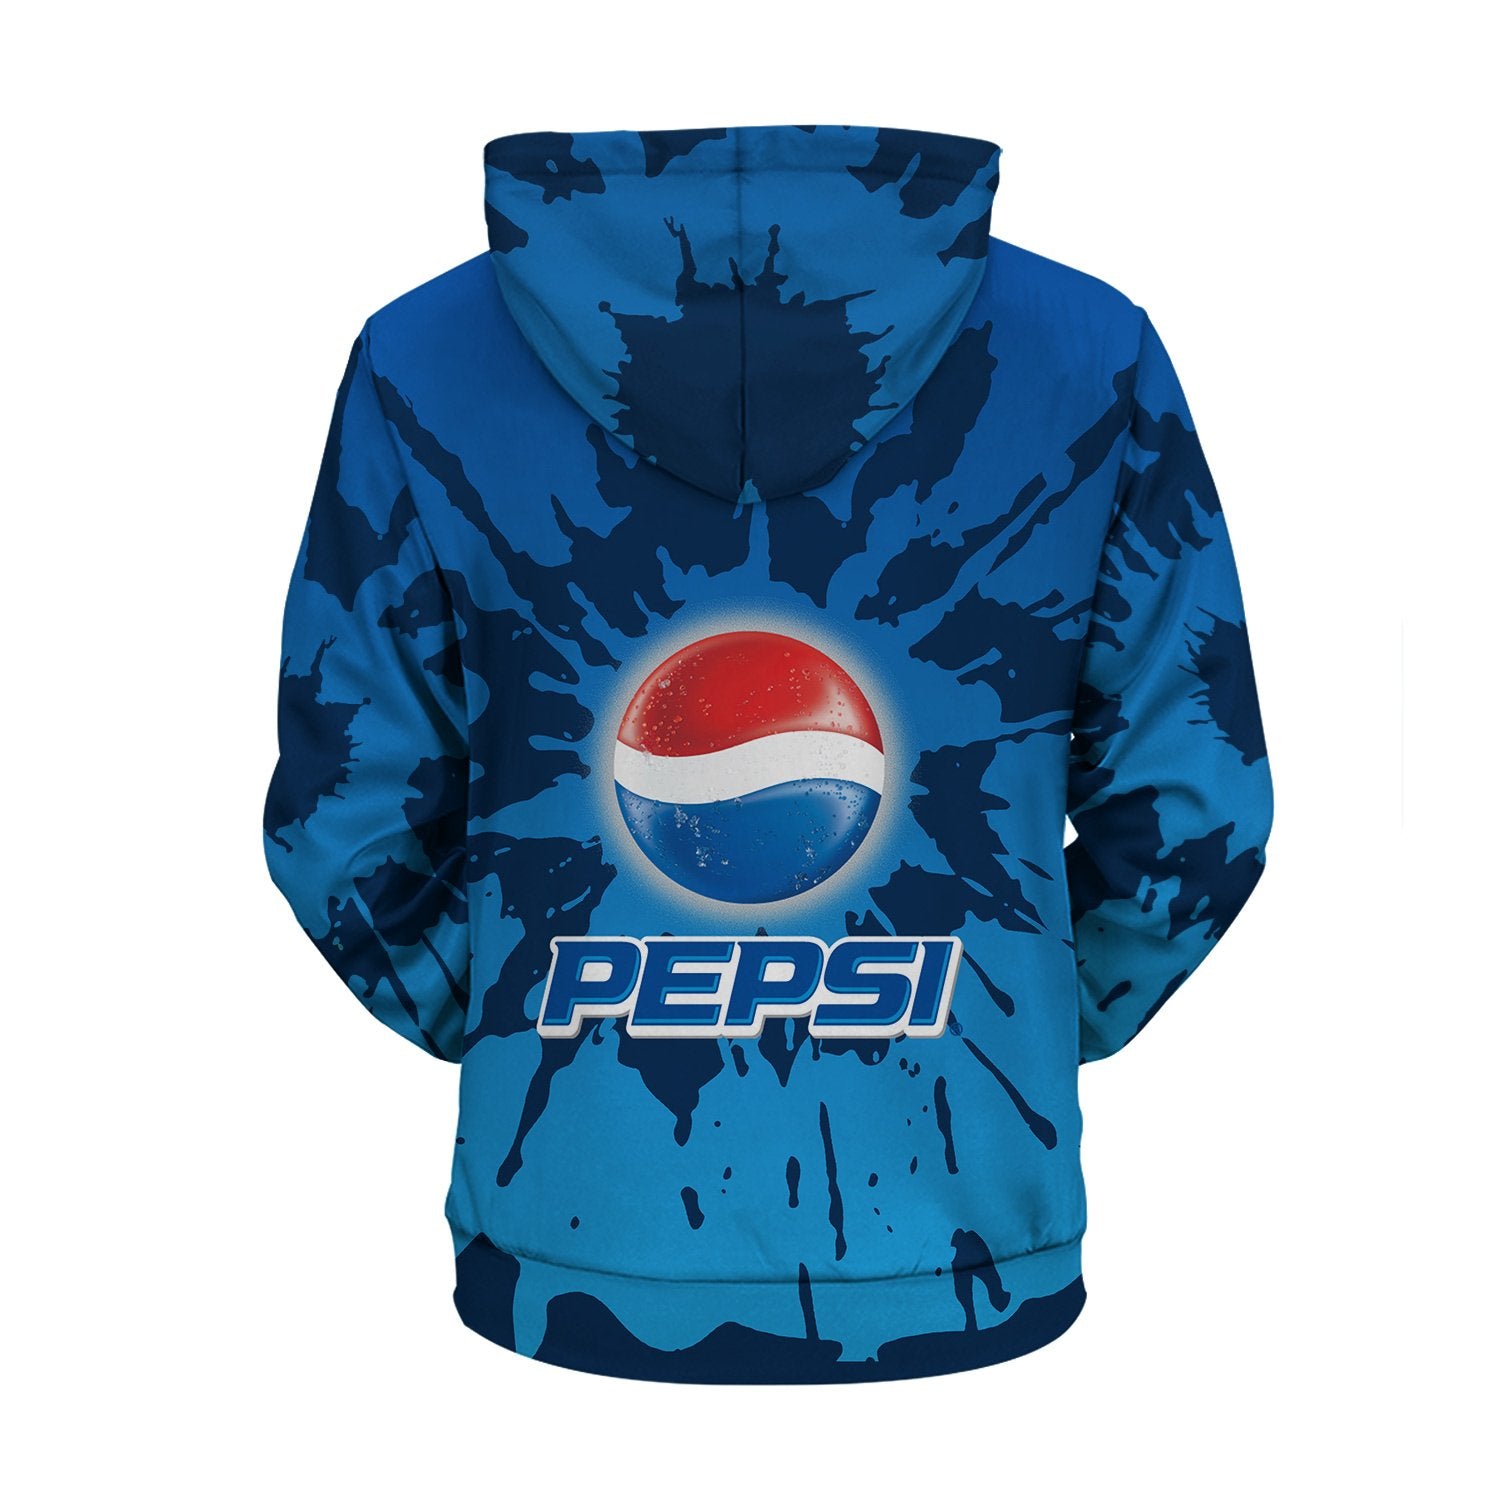 Pepsi Tie Dye Hoodie